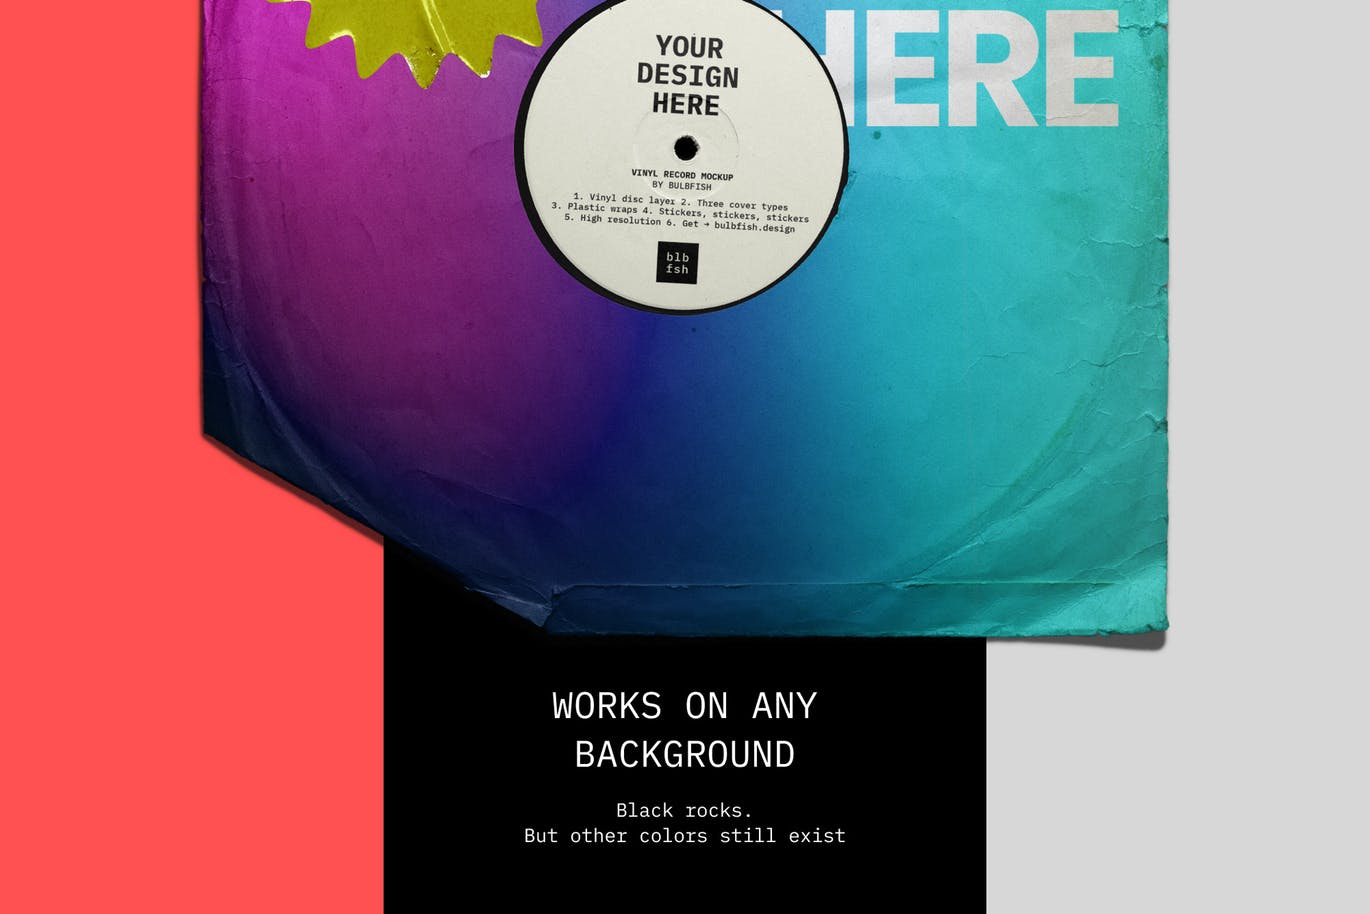 乙烯基唱片包装盒及封面设计图第一素材精选模板 Vinyl Record Mockup插图(2)